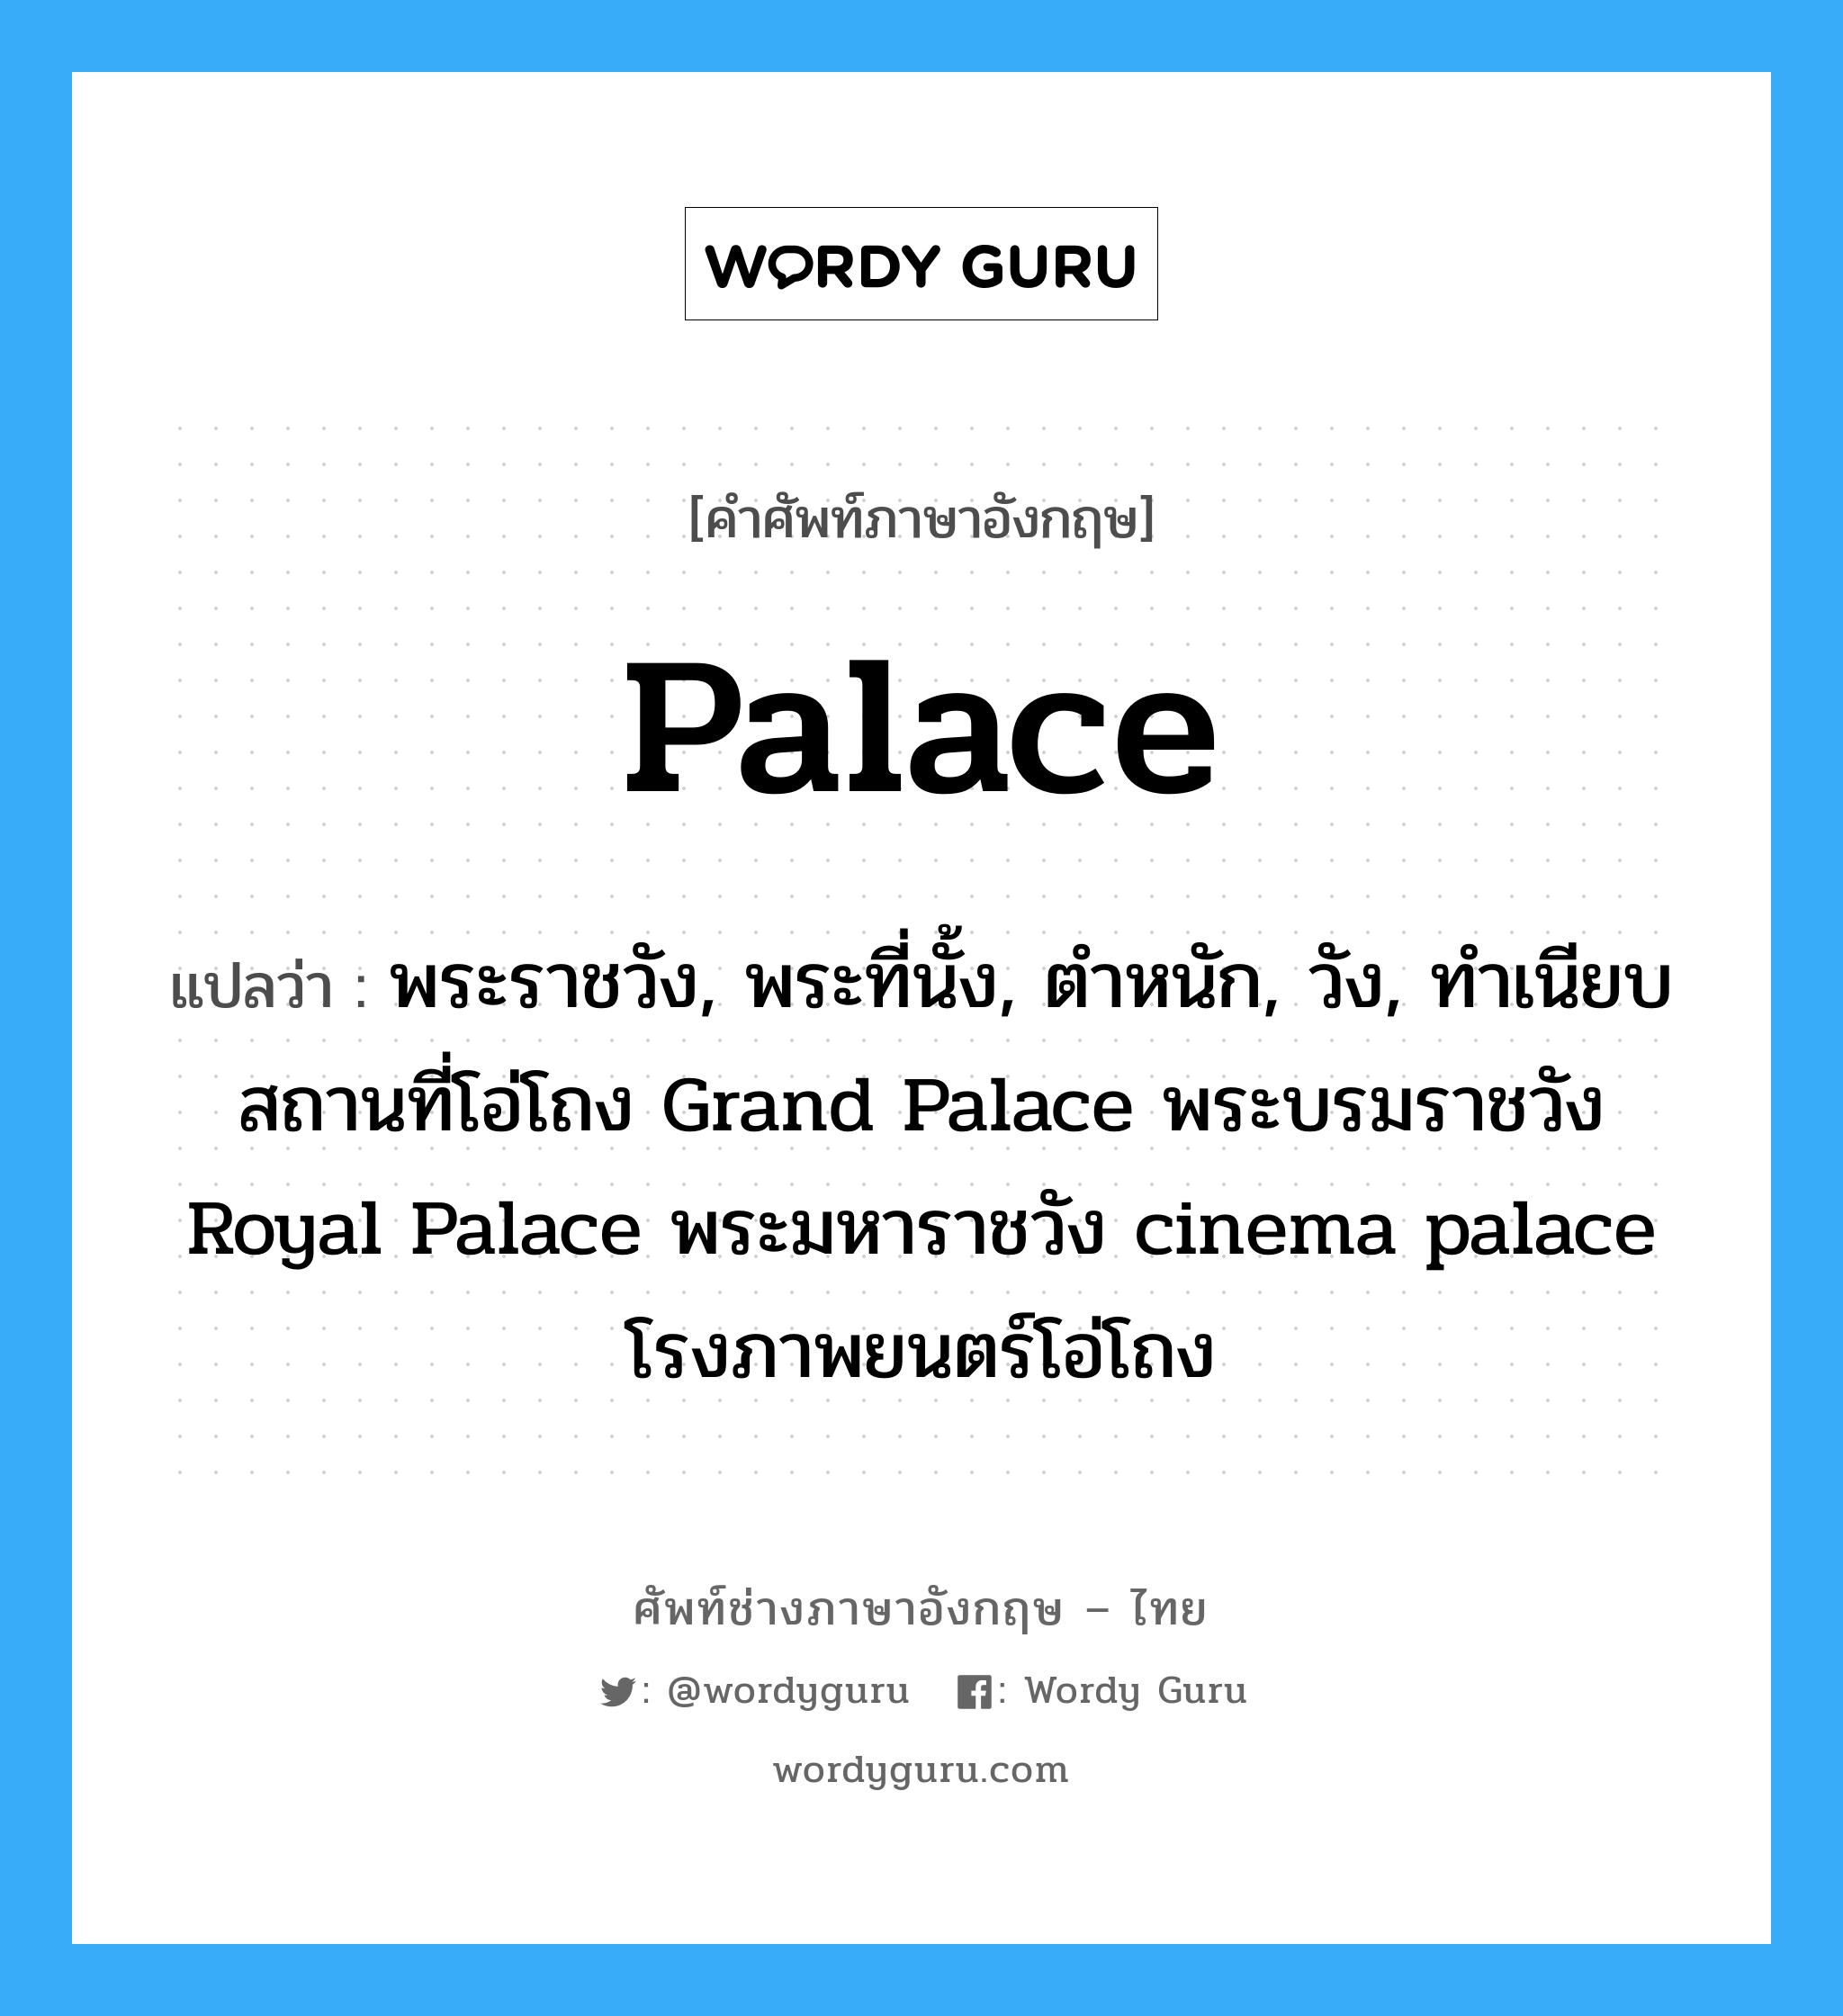 พระราชวัง, พระที่นั้ง, ตำหนัก, วัง, ทำเนียบสถานที่โอ่โถง Grand Palace พระบรมราชวัง Royal Palace พระมหาราชวัง cinema palace โรงภาพยนตร์โอ่โถง ภาษาอังกฤษ?, คำศัพท์ช่างภาษาอังกฤษ - ไทย พระราชวัง, พระที่นั้ง, ตำหนัก, วัง, ทำเนียบสถานที่โอ่โถง Grand Palace พระบรมราชวัง Royal Palace พระมหาราชวัง cinema palace โรงภาพยนตร์โอ่โถง คำศัพท์ภาษาอังกฤษ พระราชวัง, พระที่นั้ง, ตำหนัก, วัง, ทำเนียบสถานที่โอ่โถง Grand Palace พระบรมราชวัง Royal Palace พระมหาราชวัง cinema palace โรงภาพยนตร์โอ่โถง แปลว่า palace